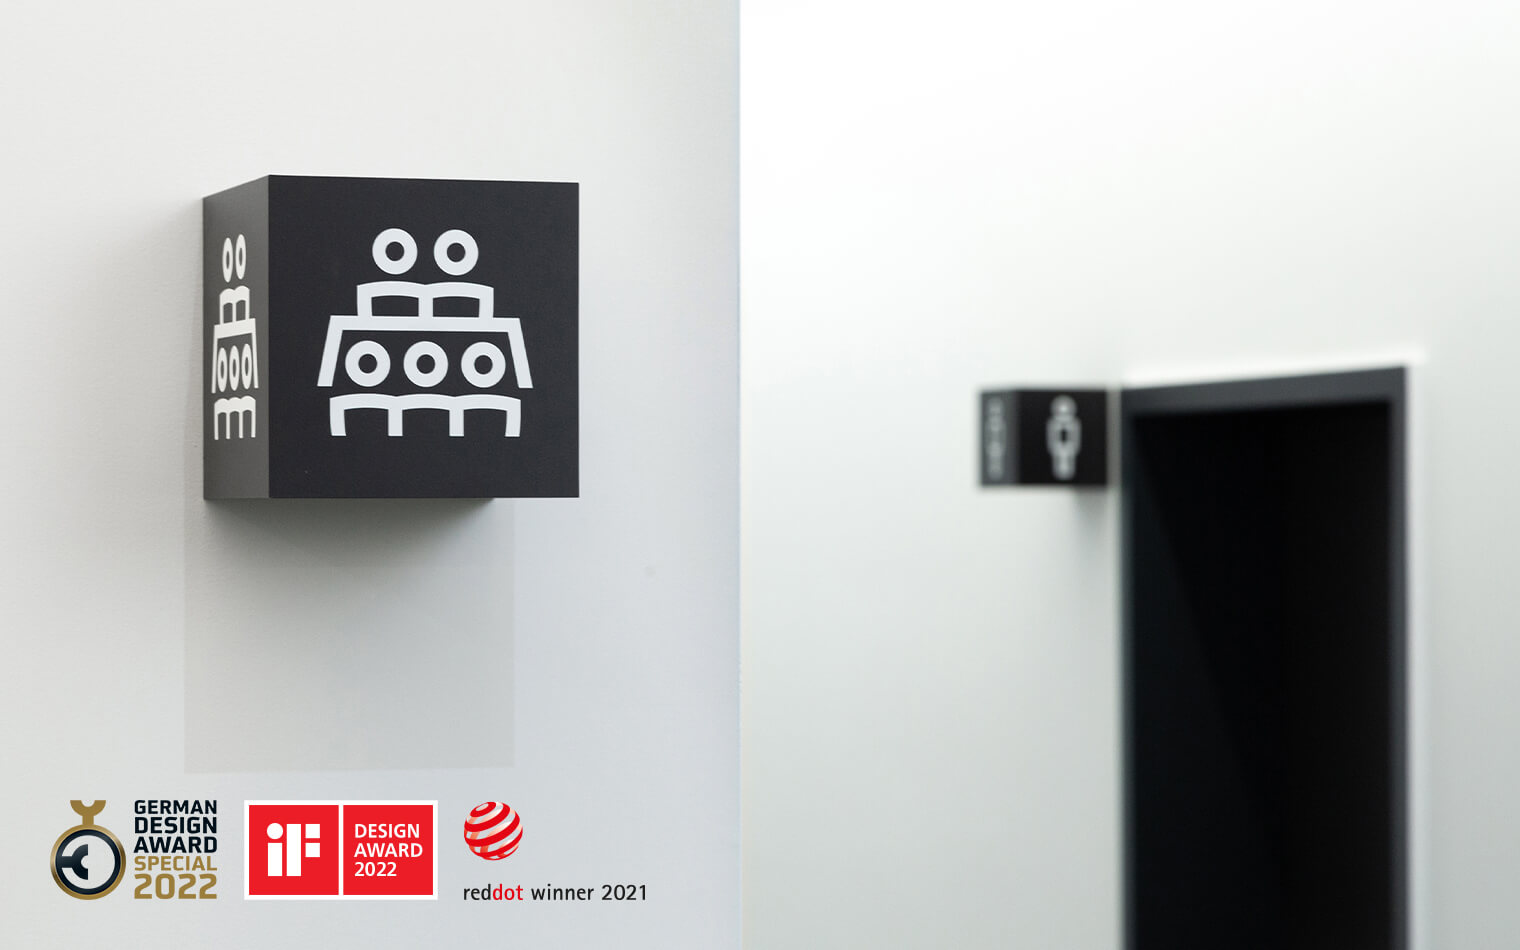 Auf diesem Bild sind ein Element der Wilo Signaletik und die Logos German Design Award 2022, Red Dot Winner 2021 und iF Design Award 2022 zu sehen.